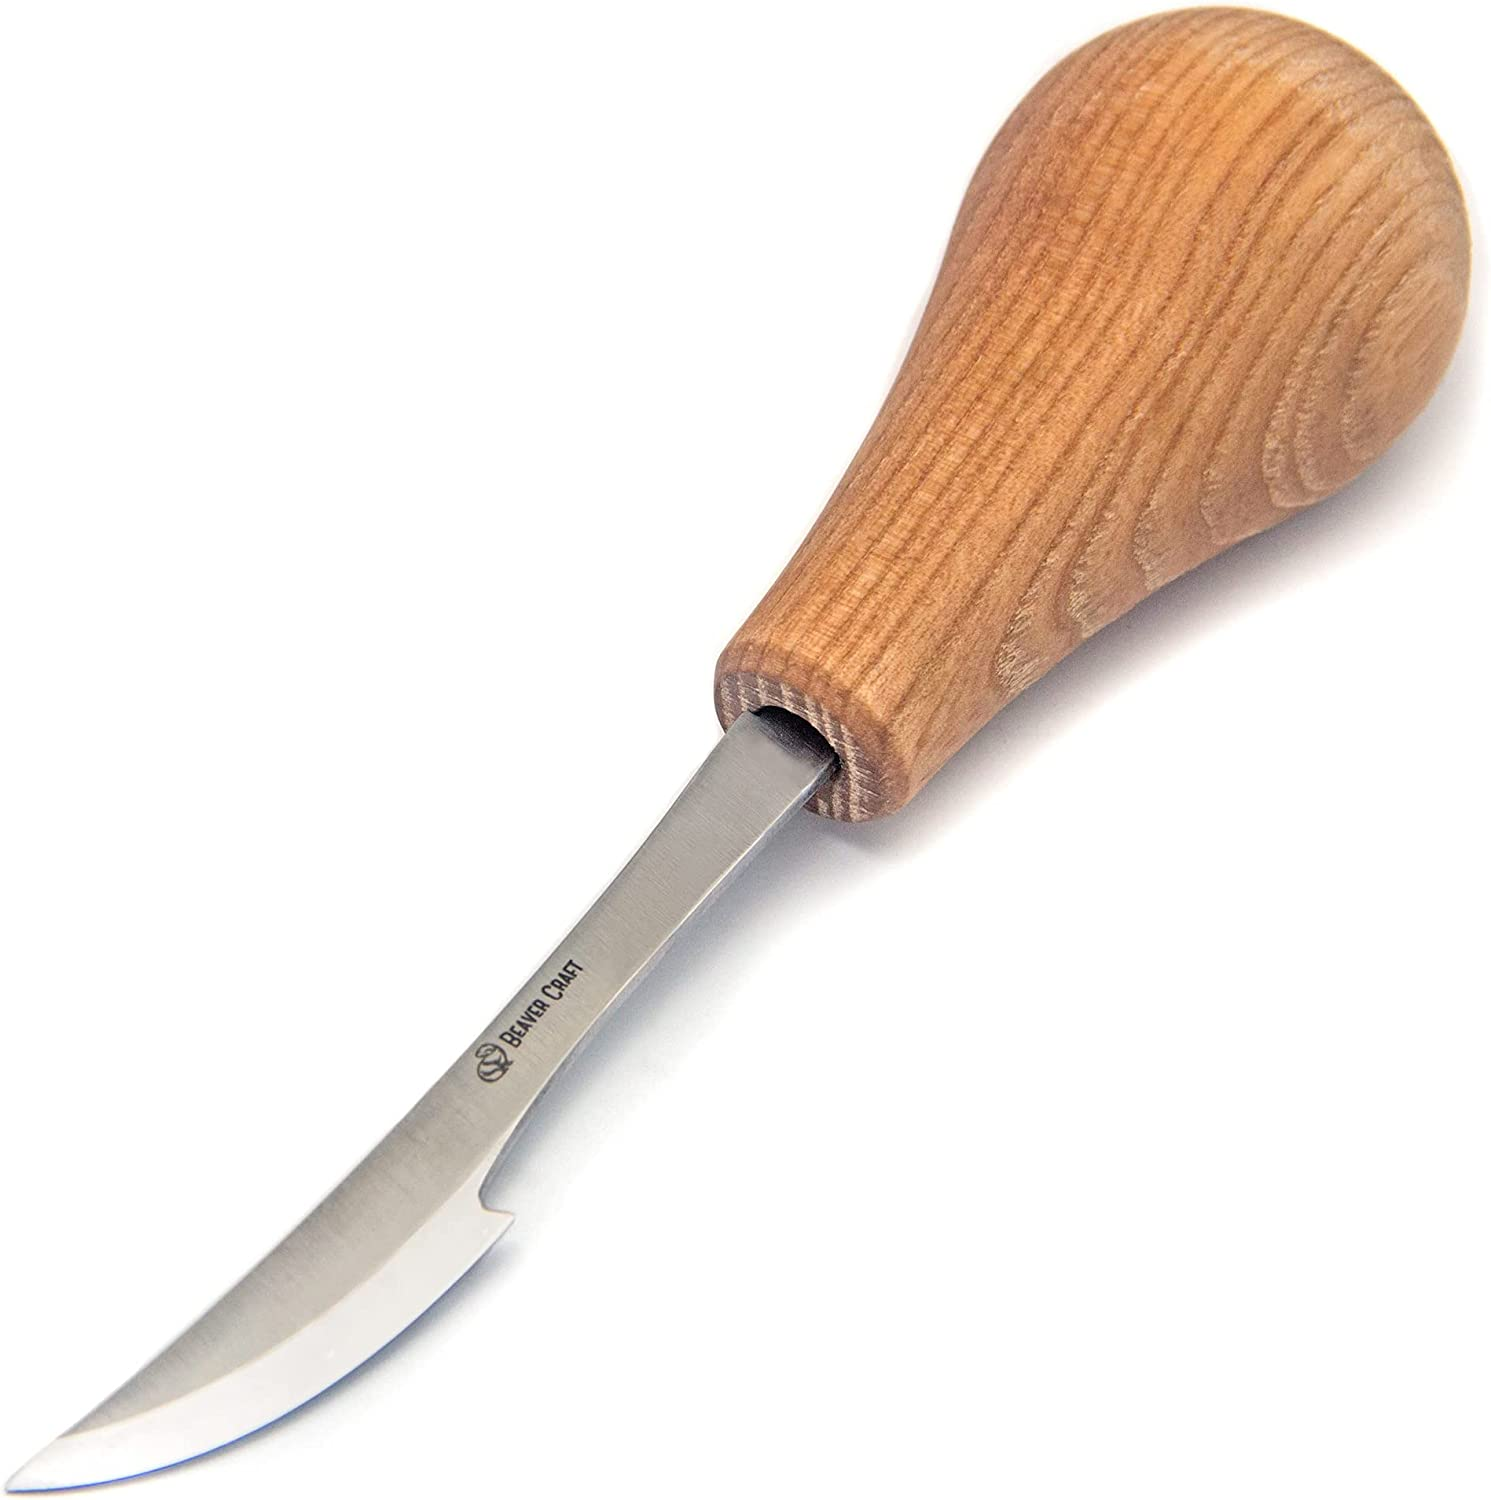 BeaverCraft Whittling Knife Palm Chisel